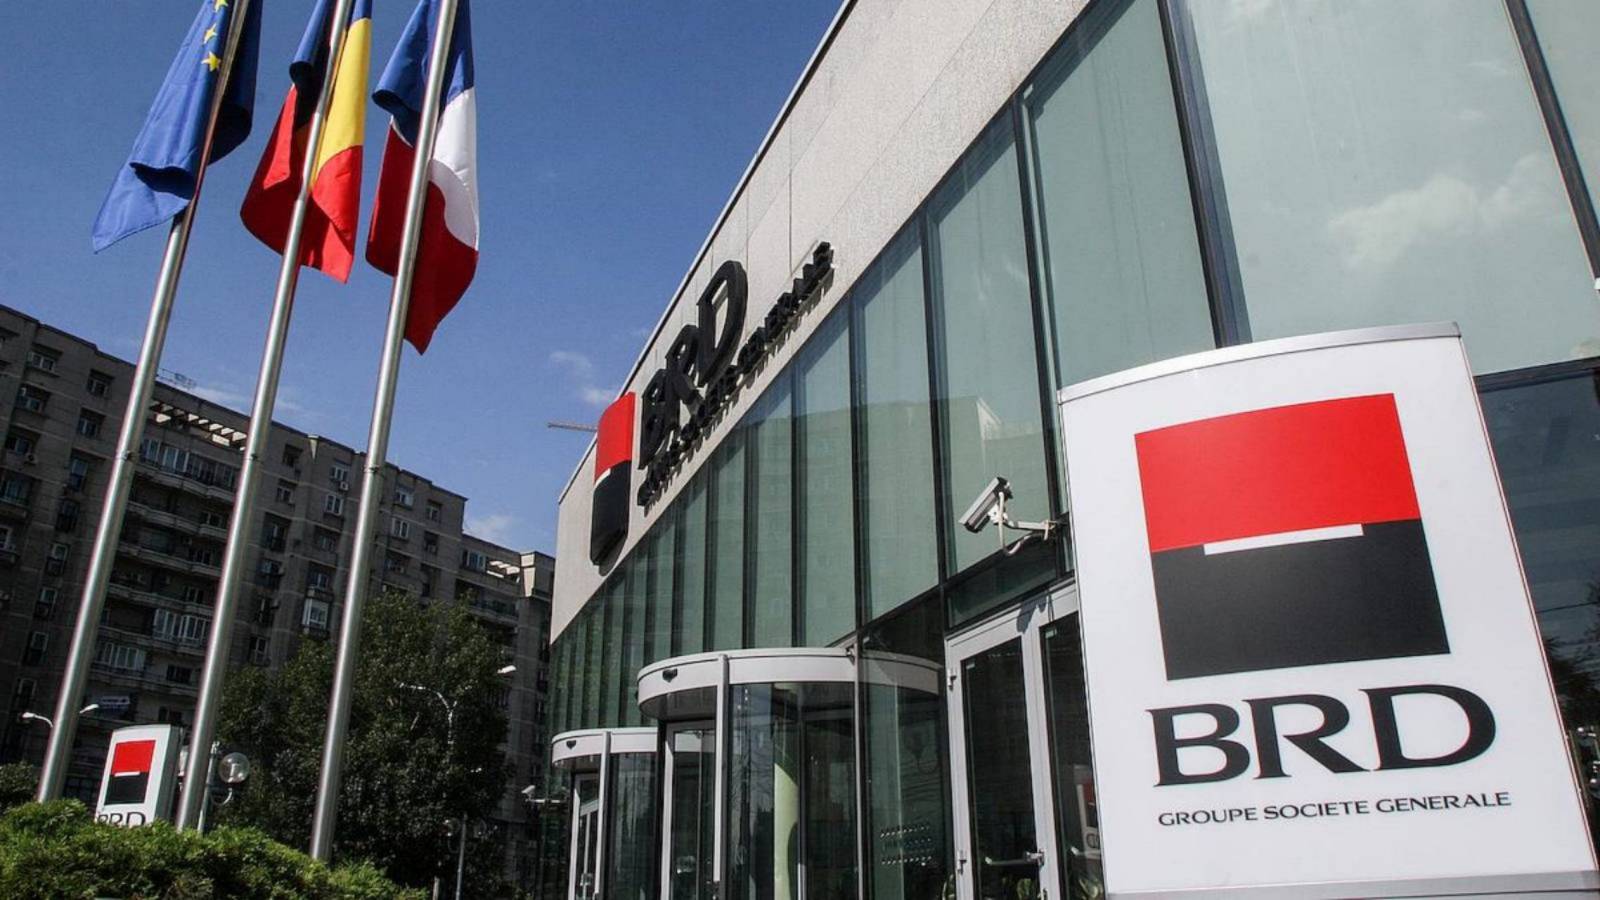 BRD Romanian asiakkaat varoittivat tietokonehyökkäyksiä